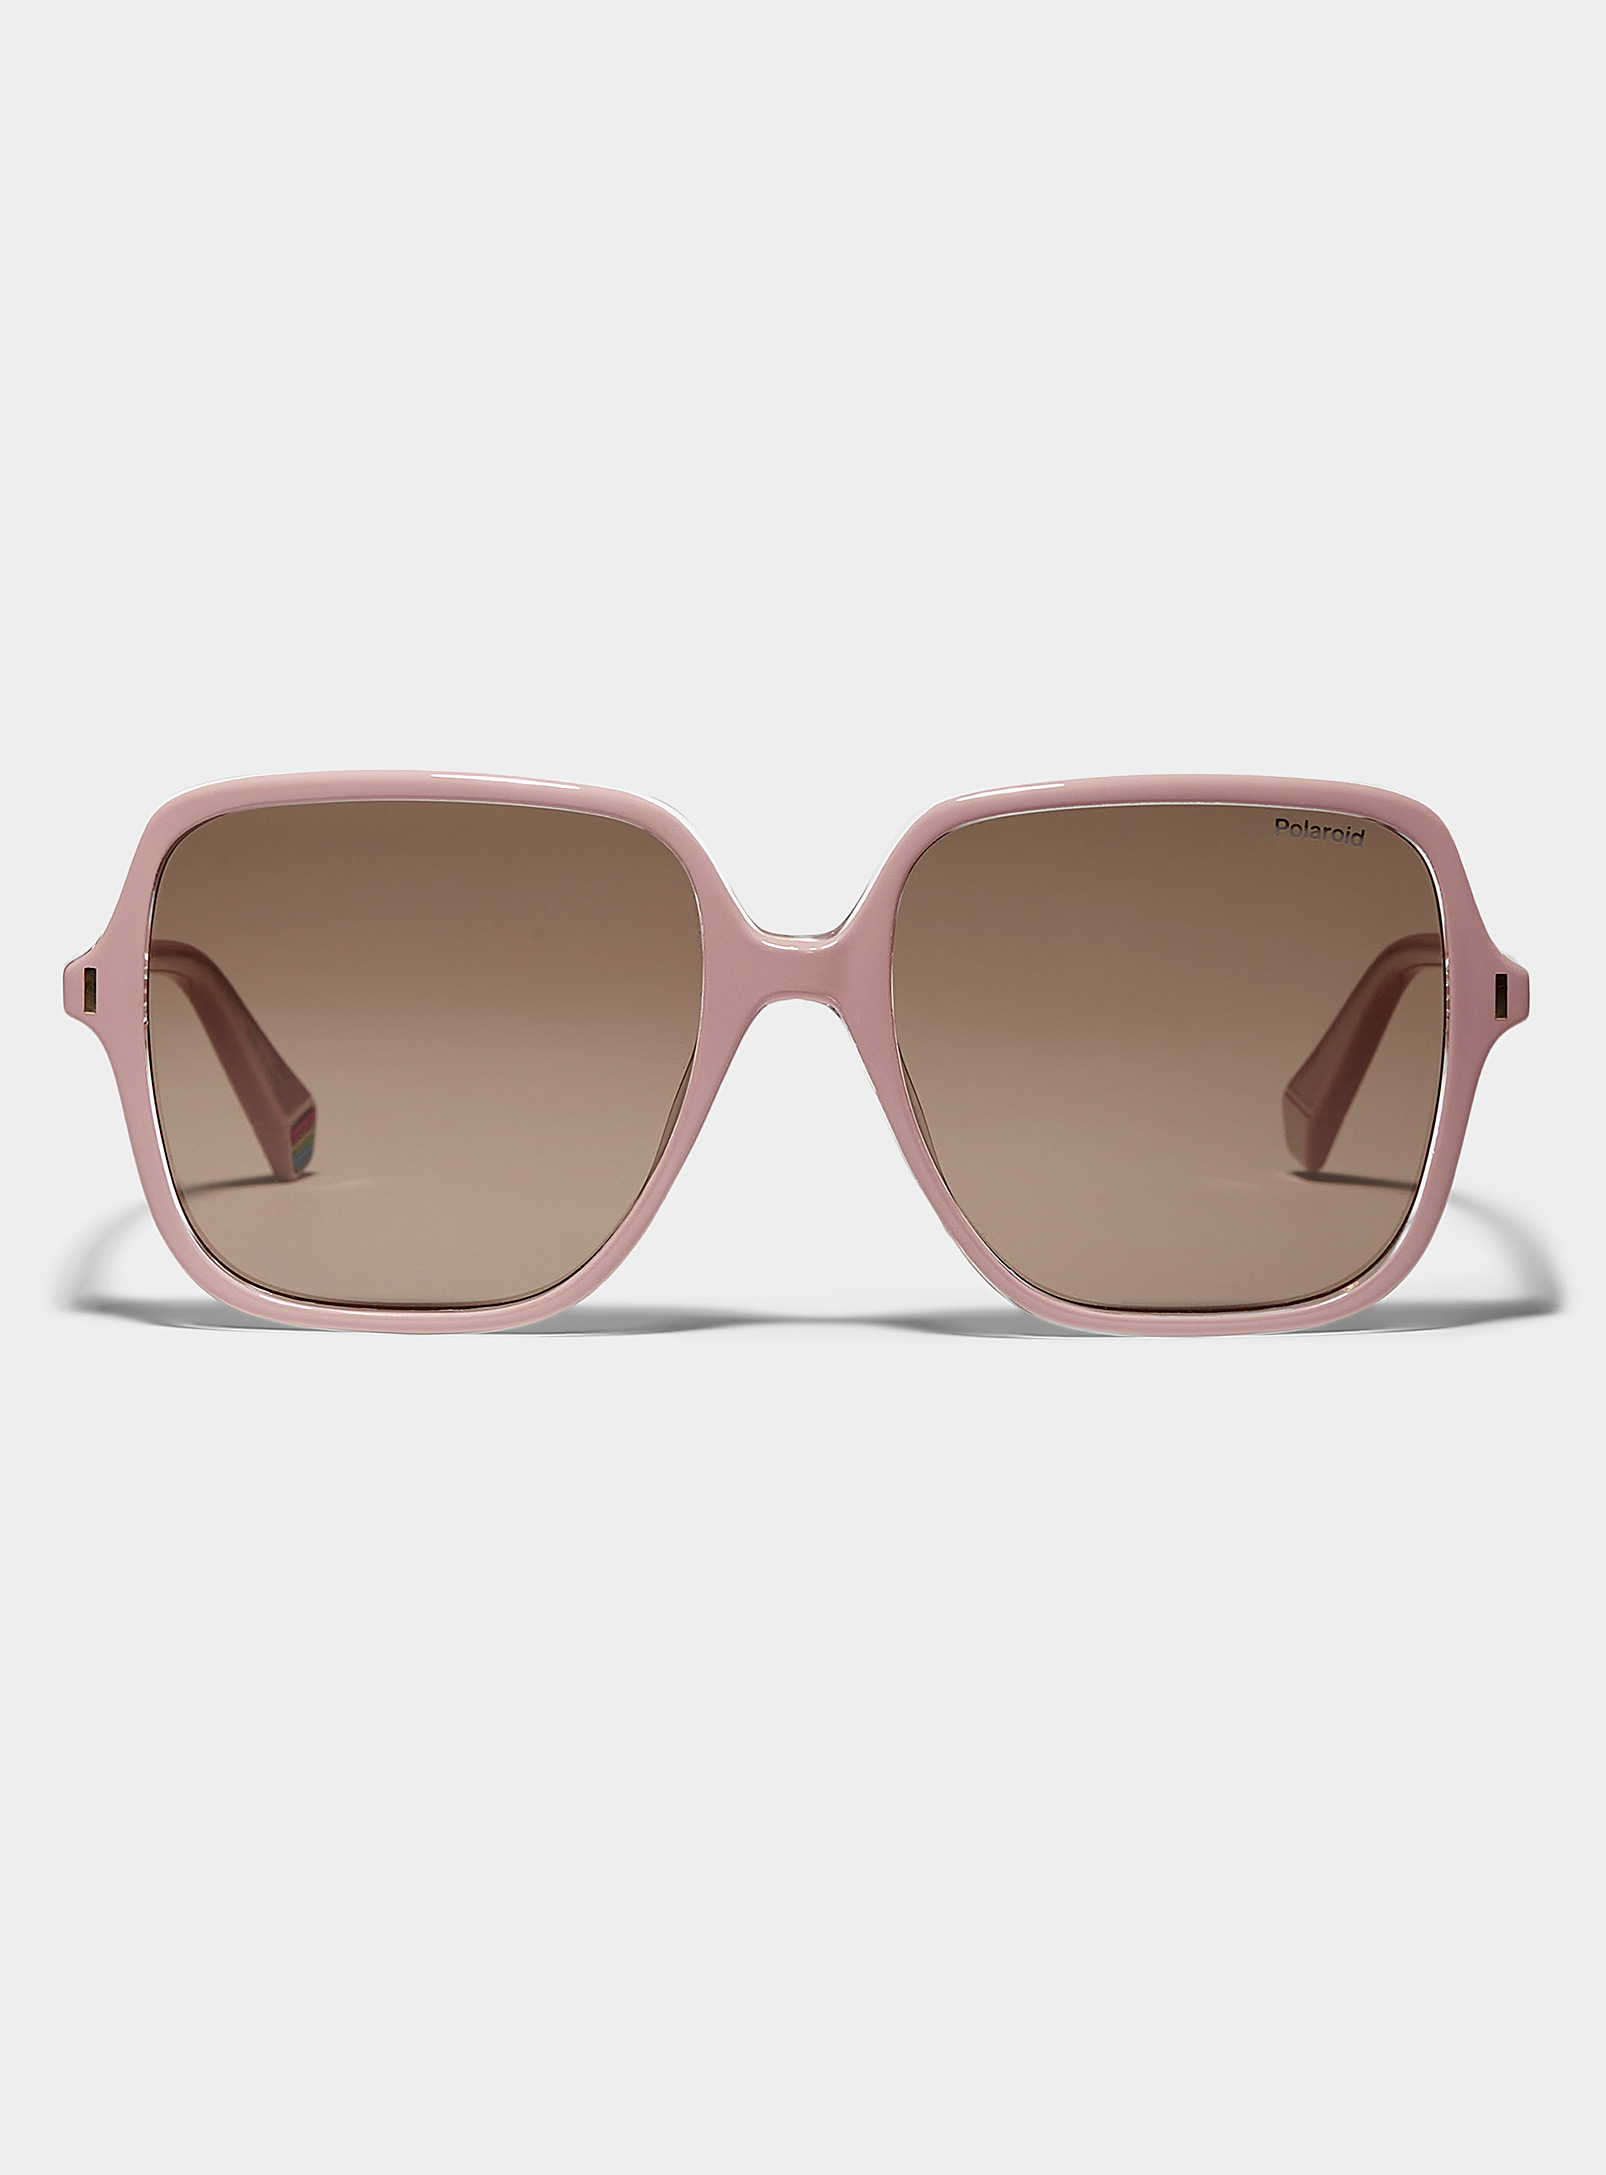 Polaroid Thin Square Sunglasses In Brown